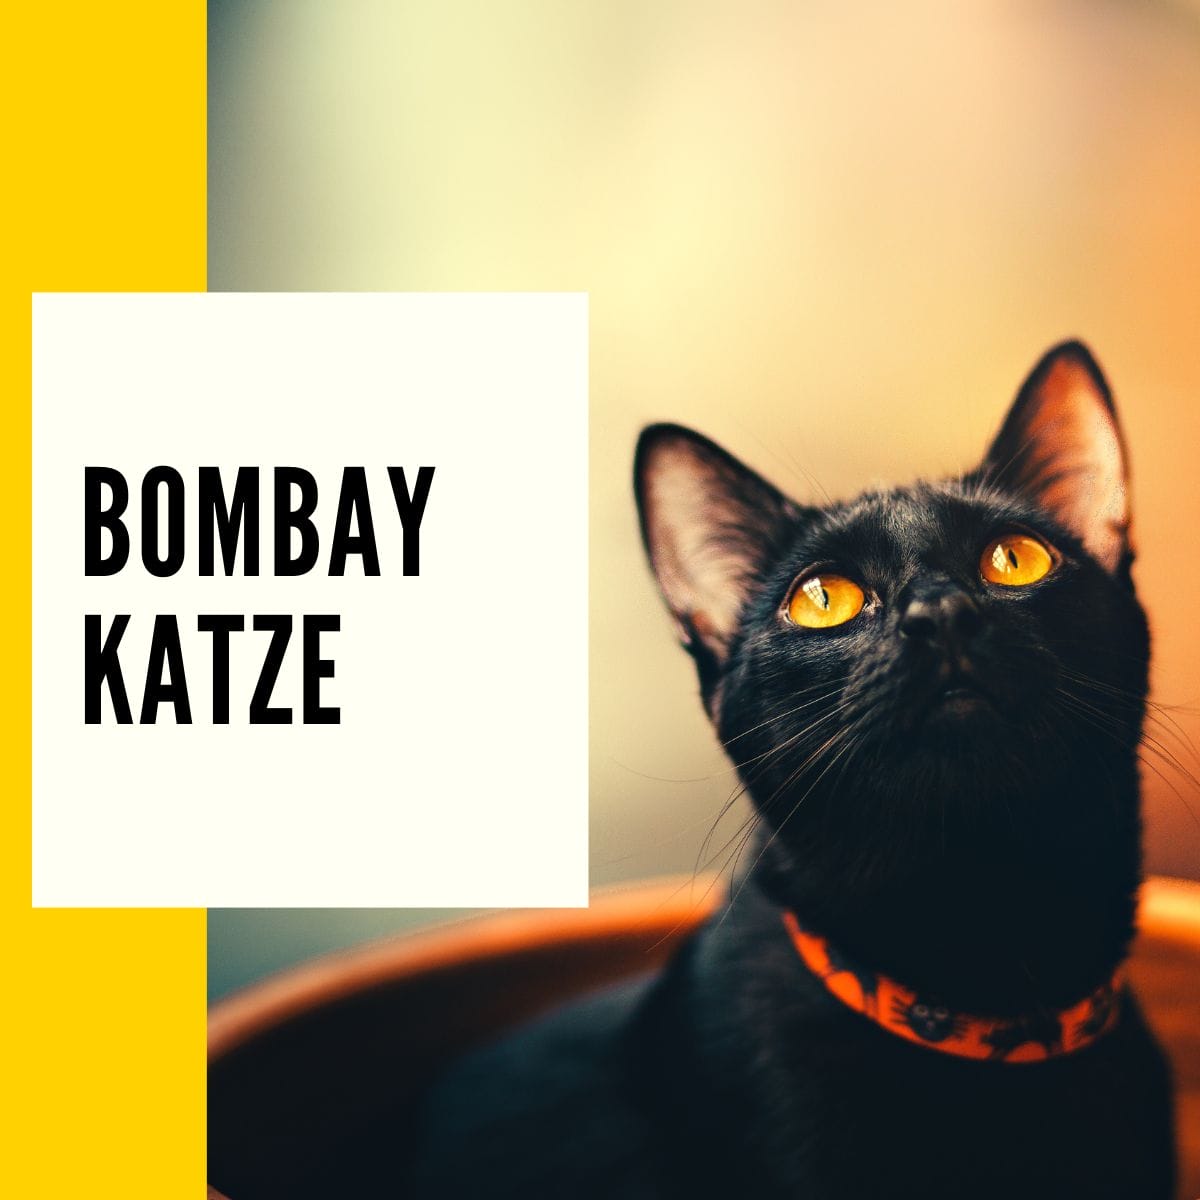 Bombay Katze – In diesem Beitrag findet ihr alle Informationen über die Bombay Katze